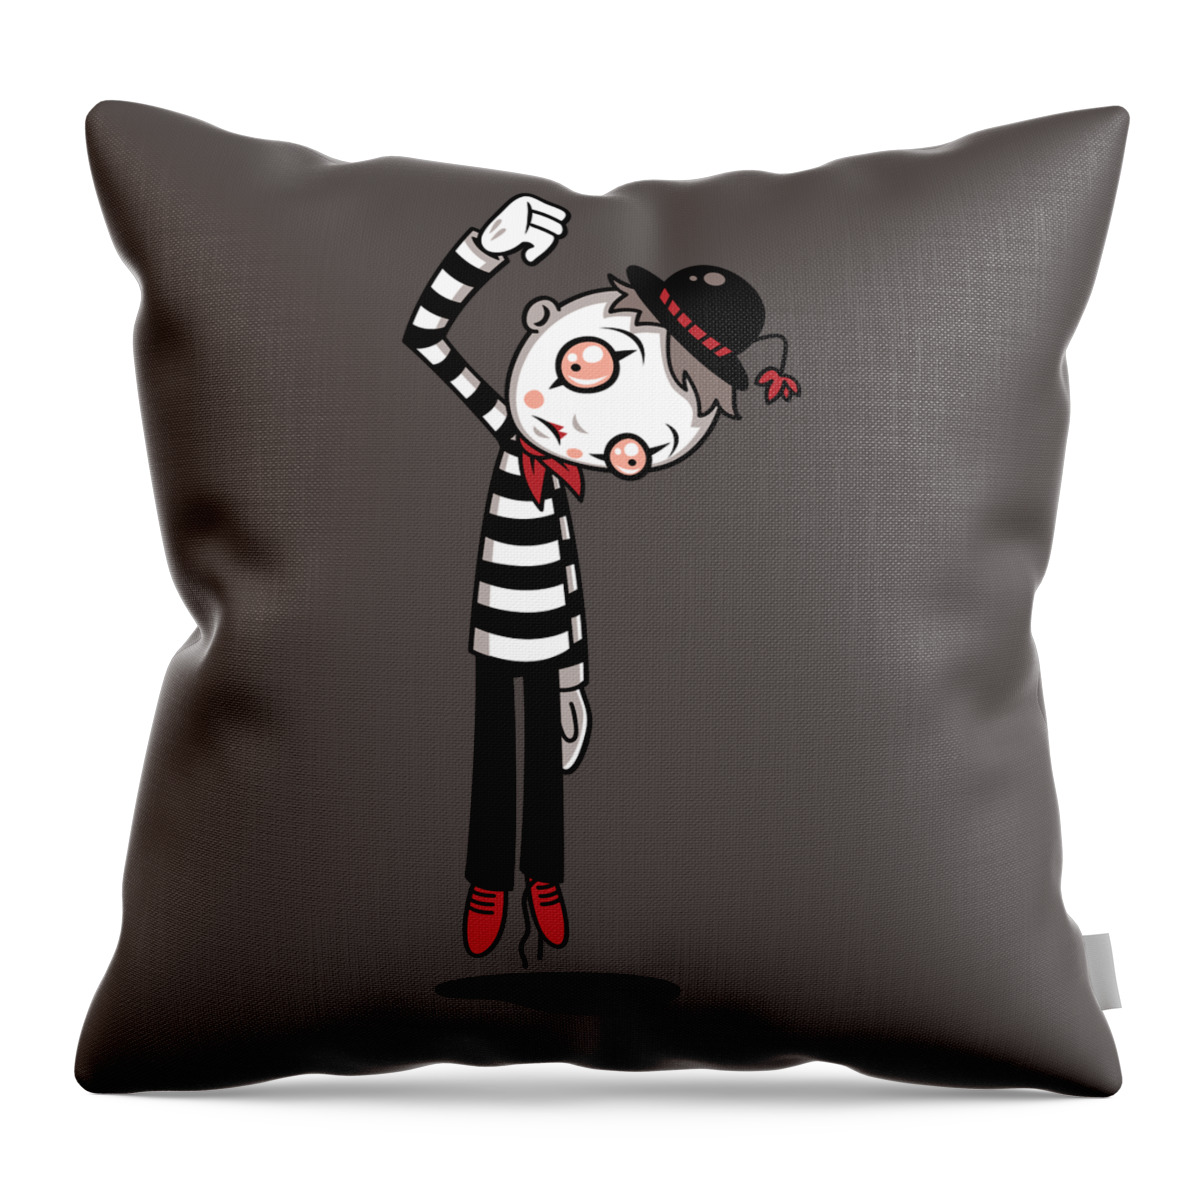 Mime Throw Pillow featuring the digital art Bestest Mime Ever by John Schwegel